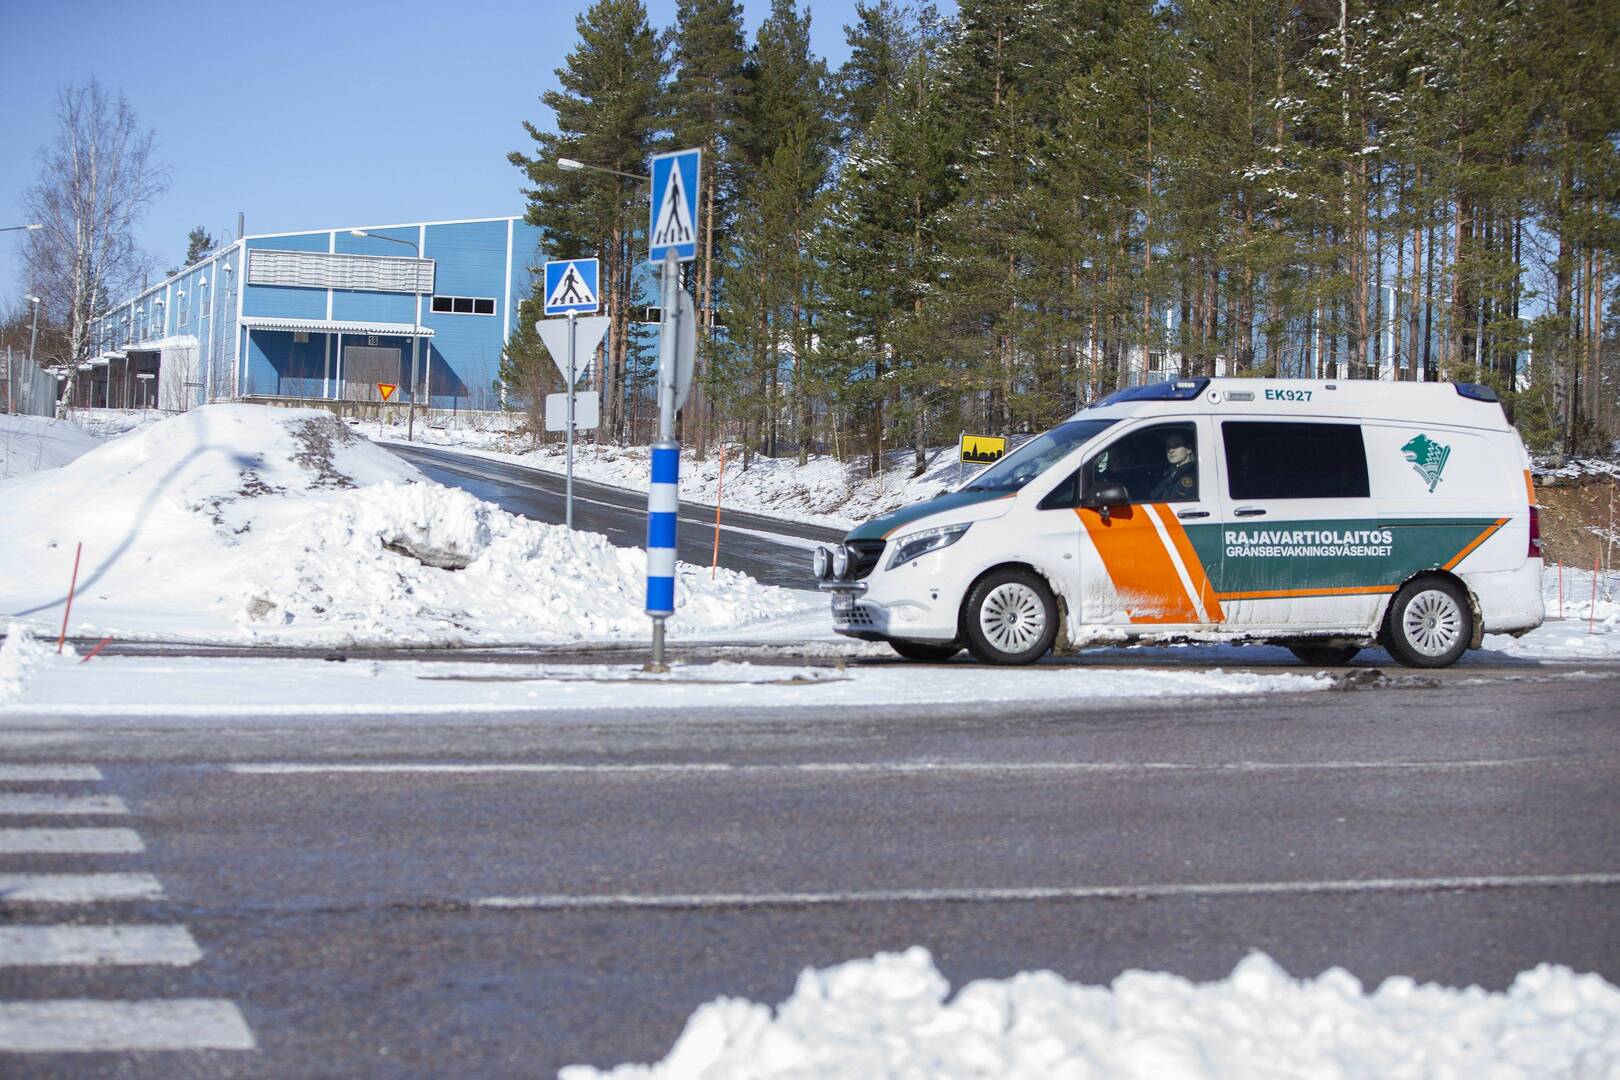 سيارة دورية تابعة لحرس الحدود الفنلندي قرب الحدود الروسية الفنلندية